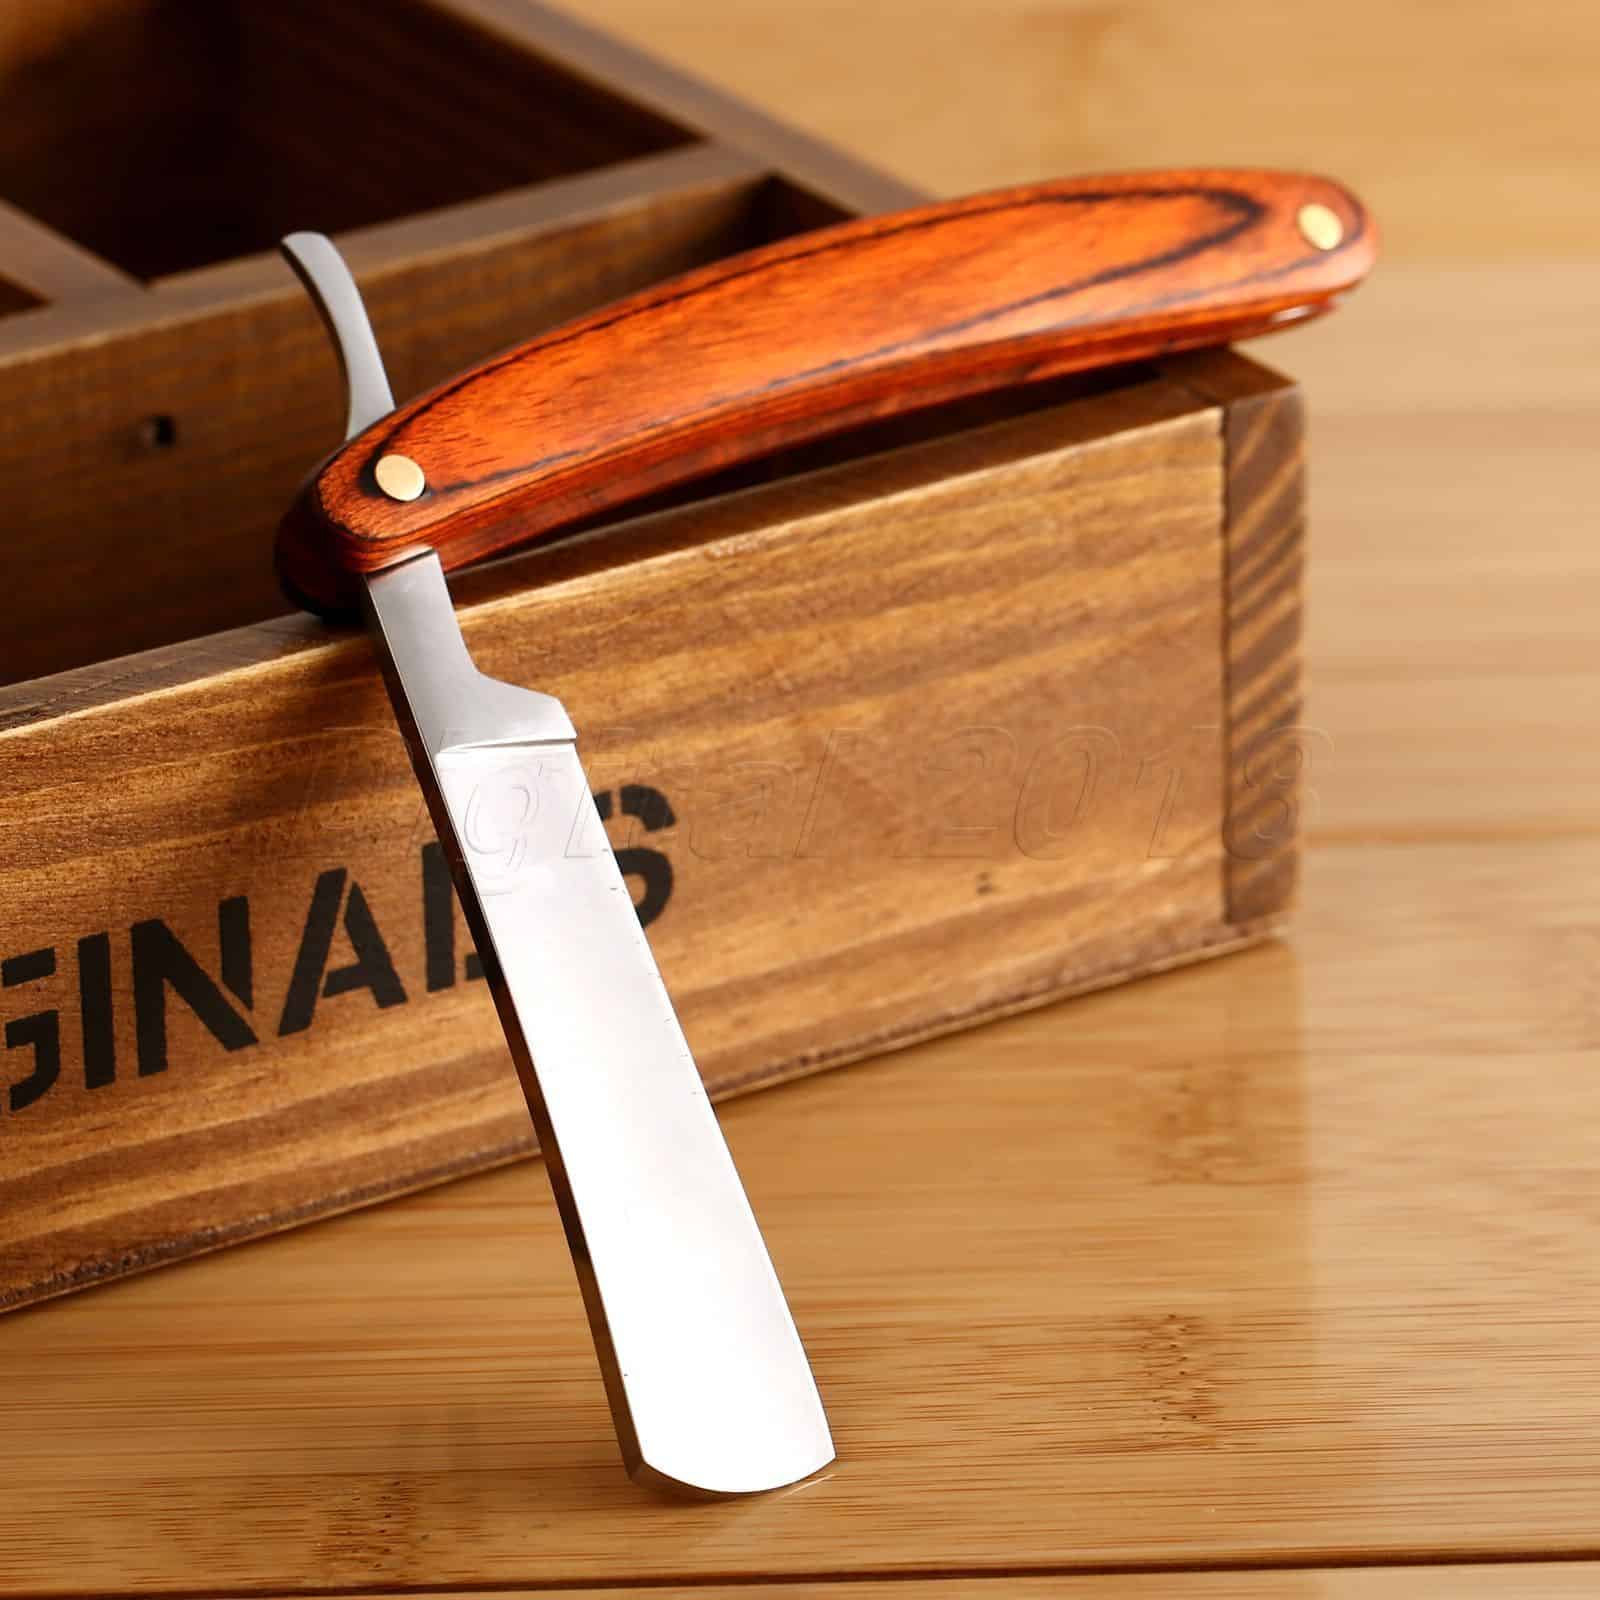 Rasiermesser mit Holzgriff für 3,99 Euro inkl. Lieferung aus dem Gadget-Land China!